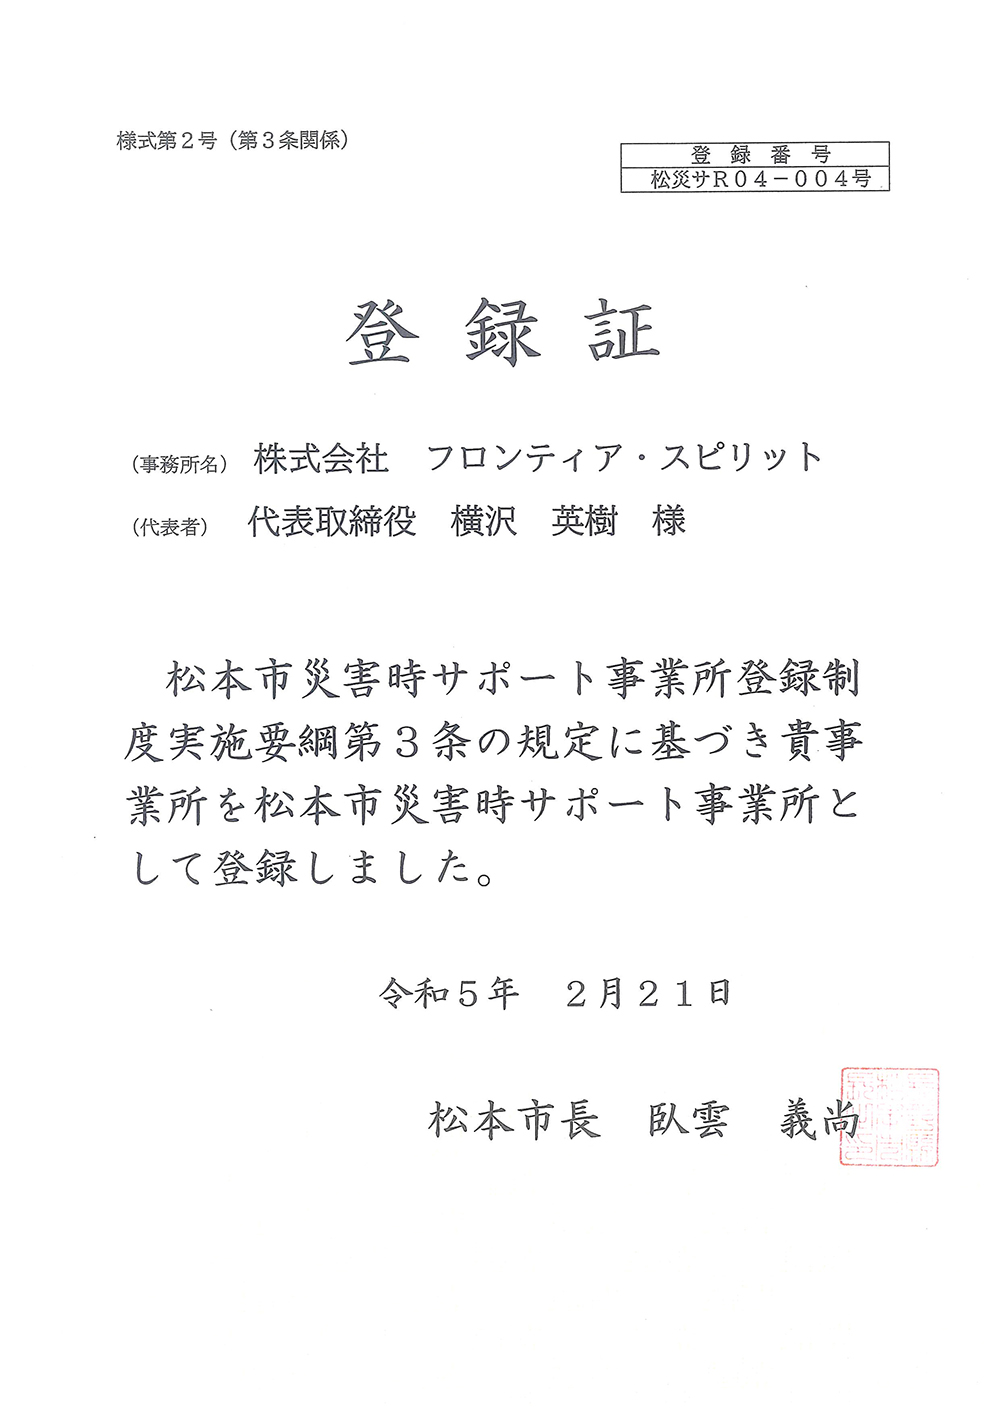 松本市災害時サポート登録事業